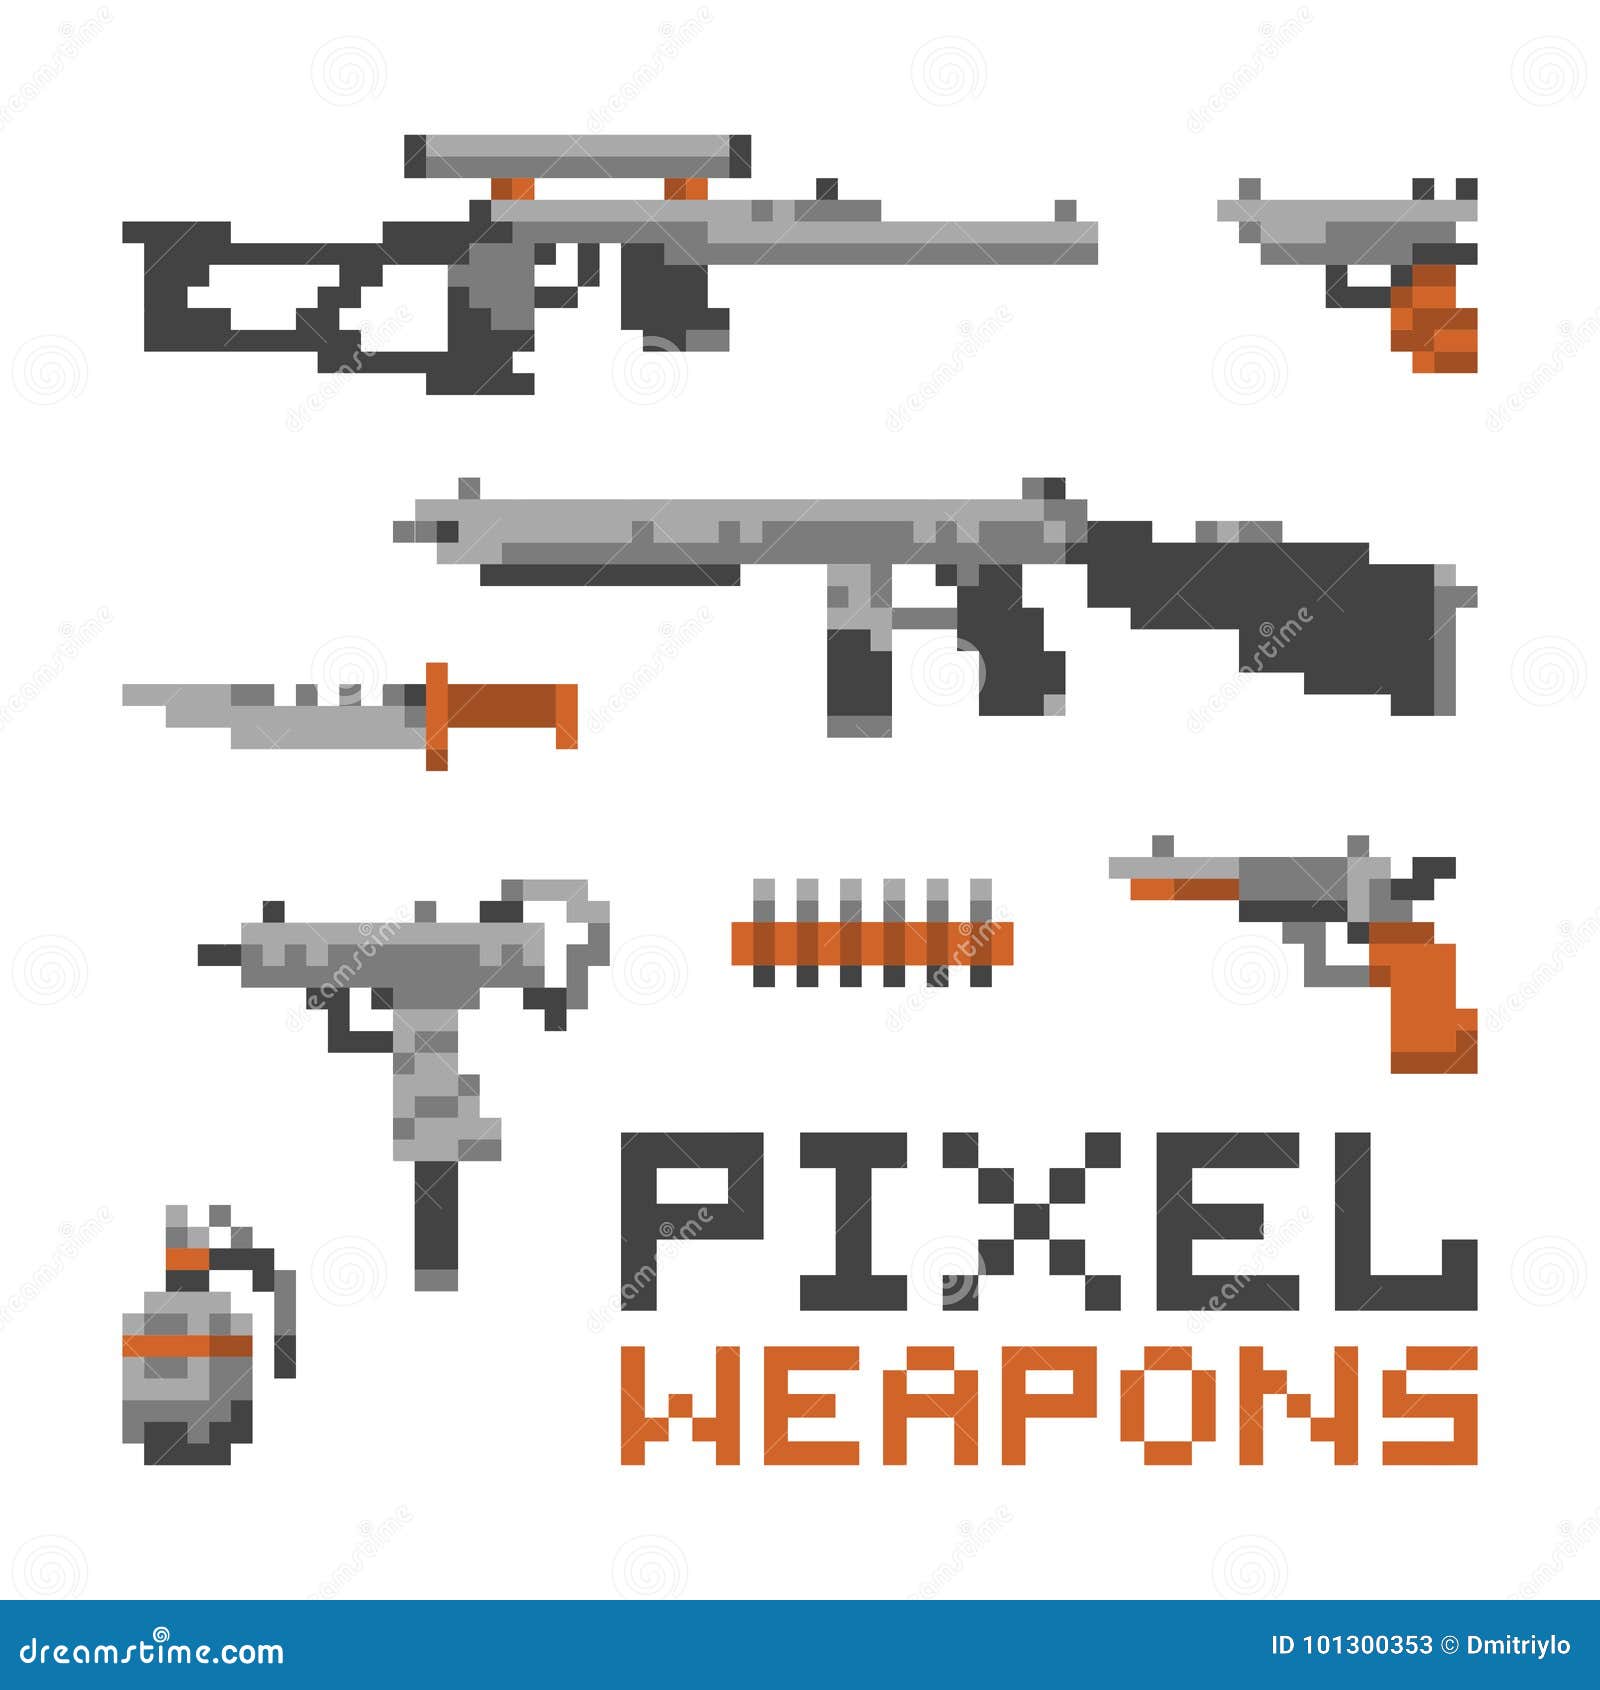 Pixel art revólver pistola jogo com fundo branco